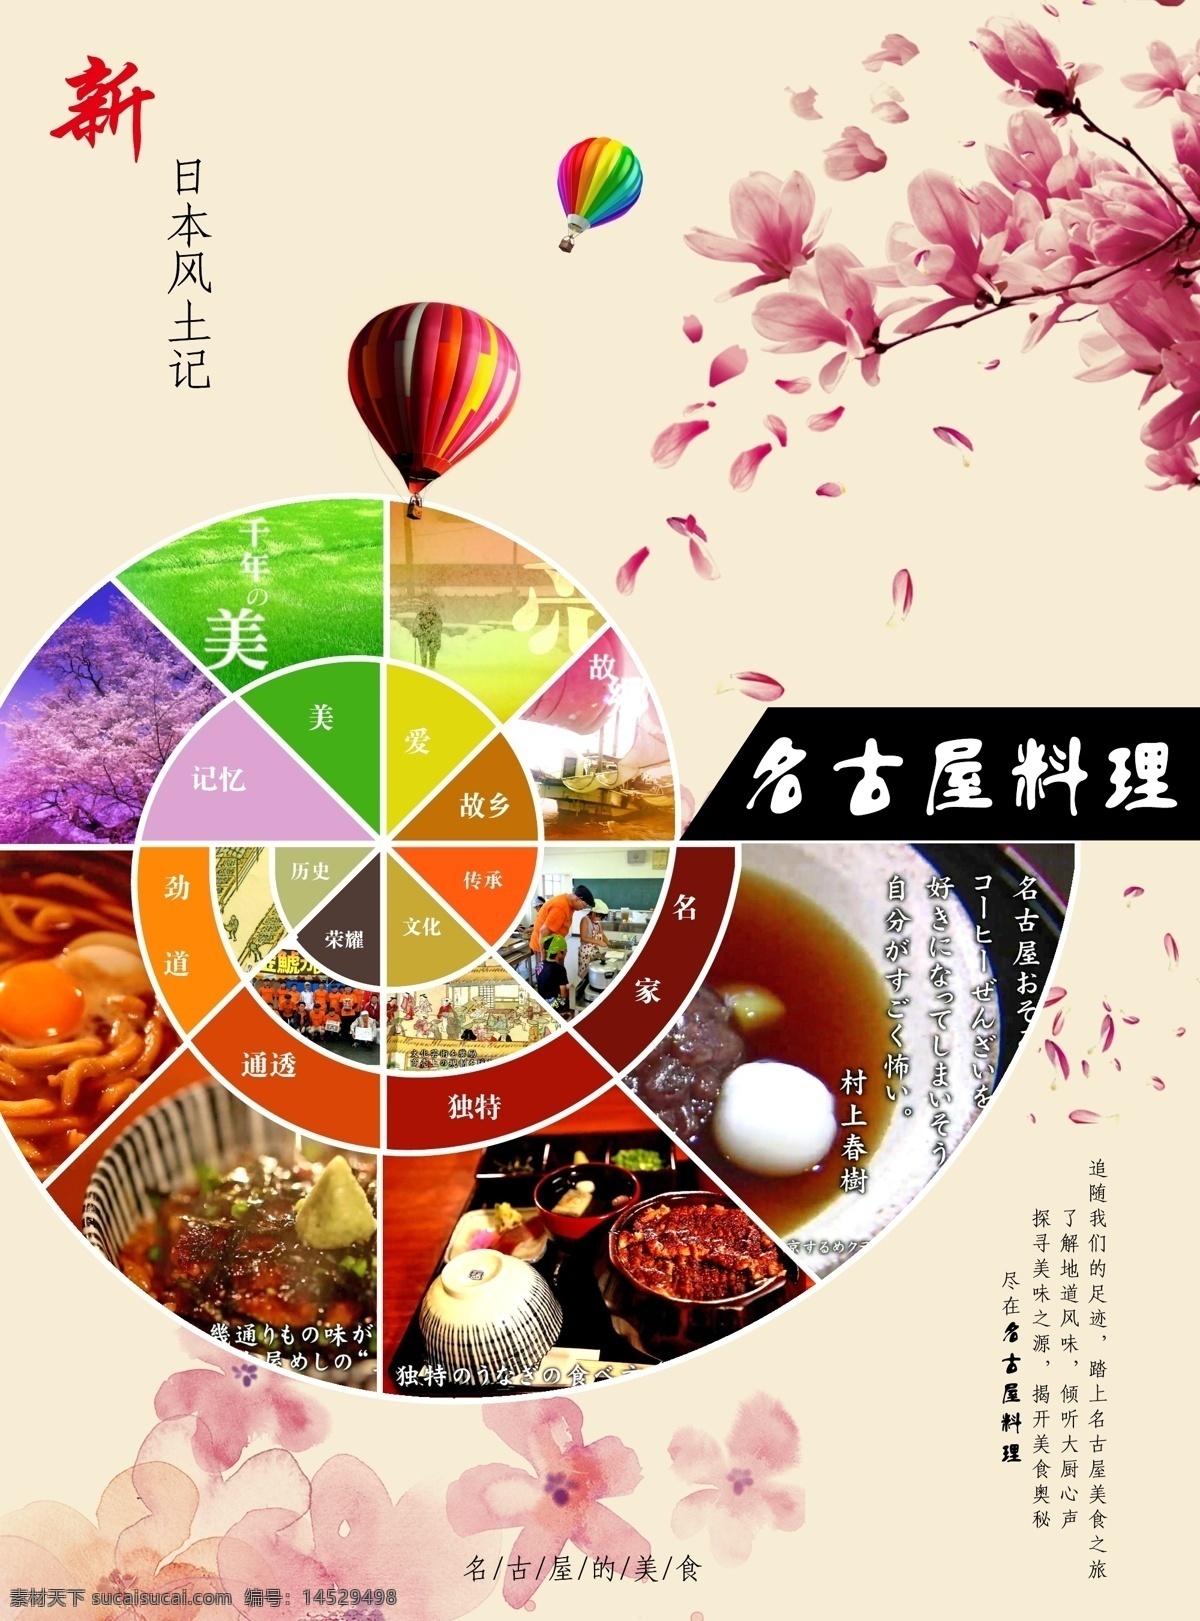 名古屋 料理 dm 单 页 美食 dm宣传单 广告插页 日本